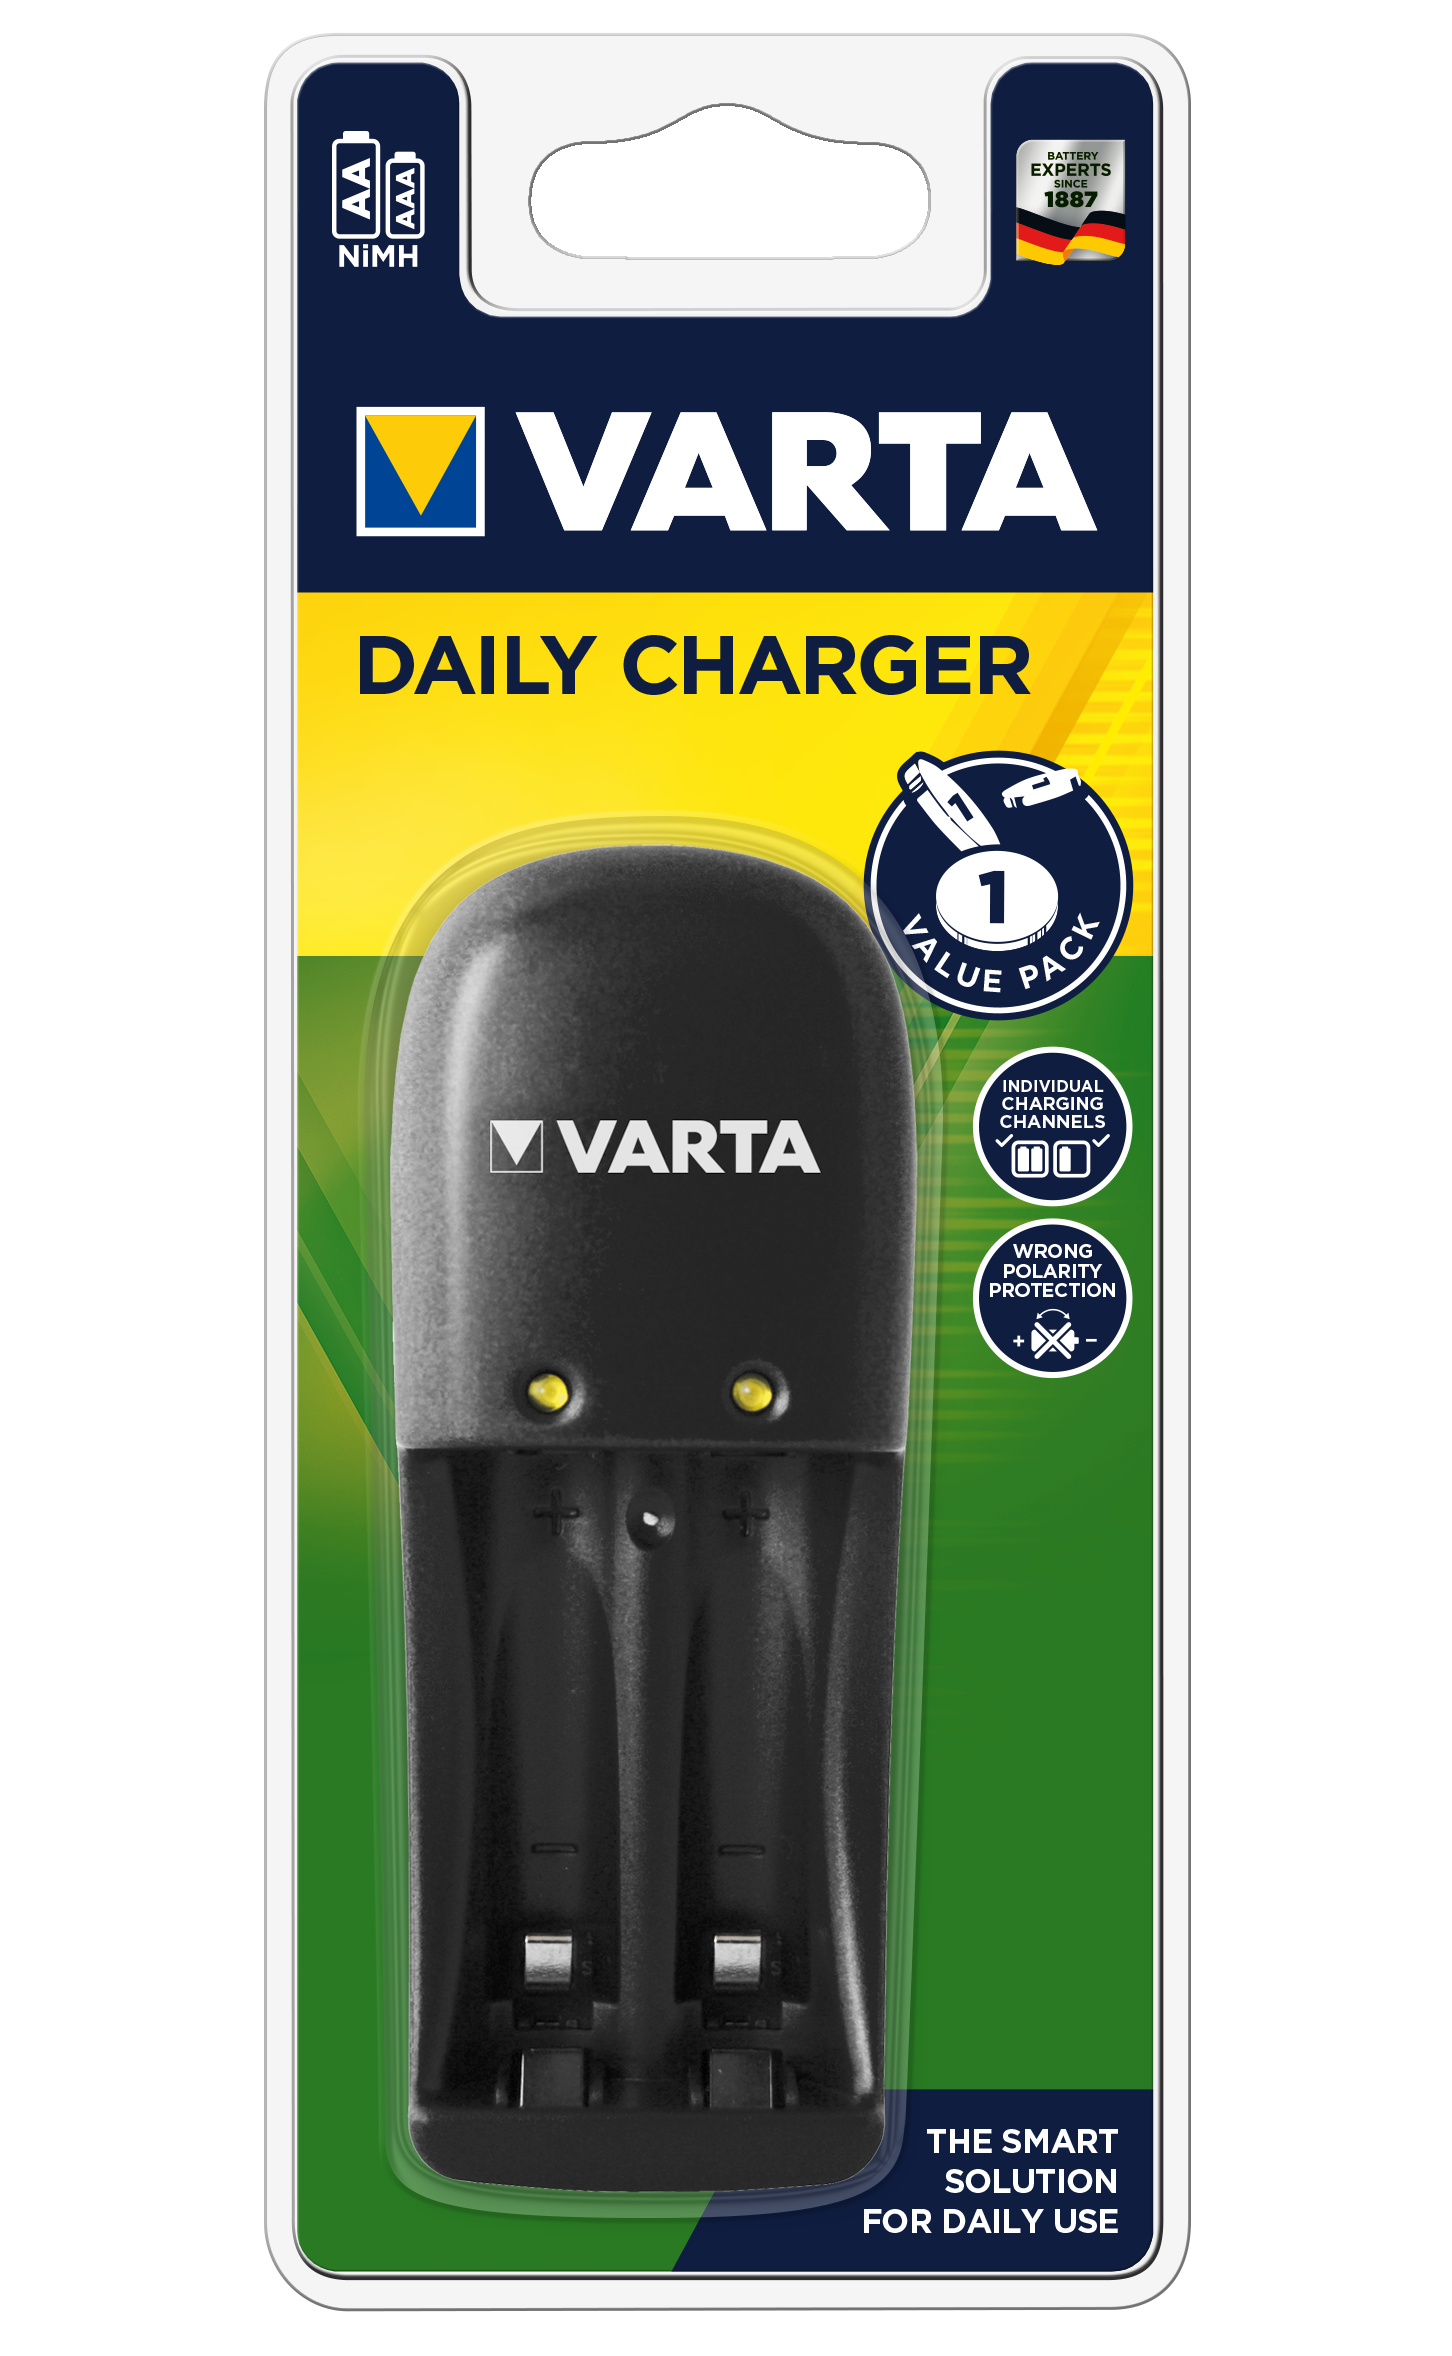 Зарядное ус-во VARTA Daily Charger AA, AAA (771448)